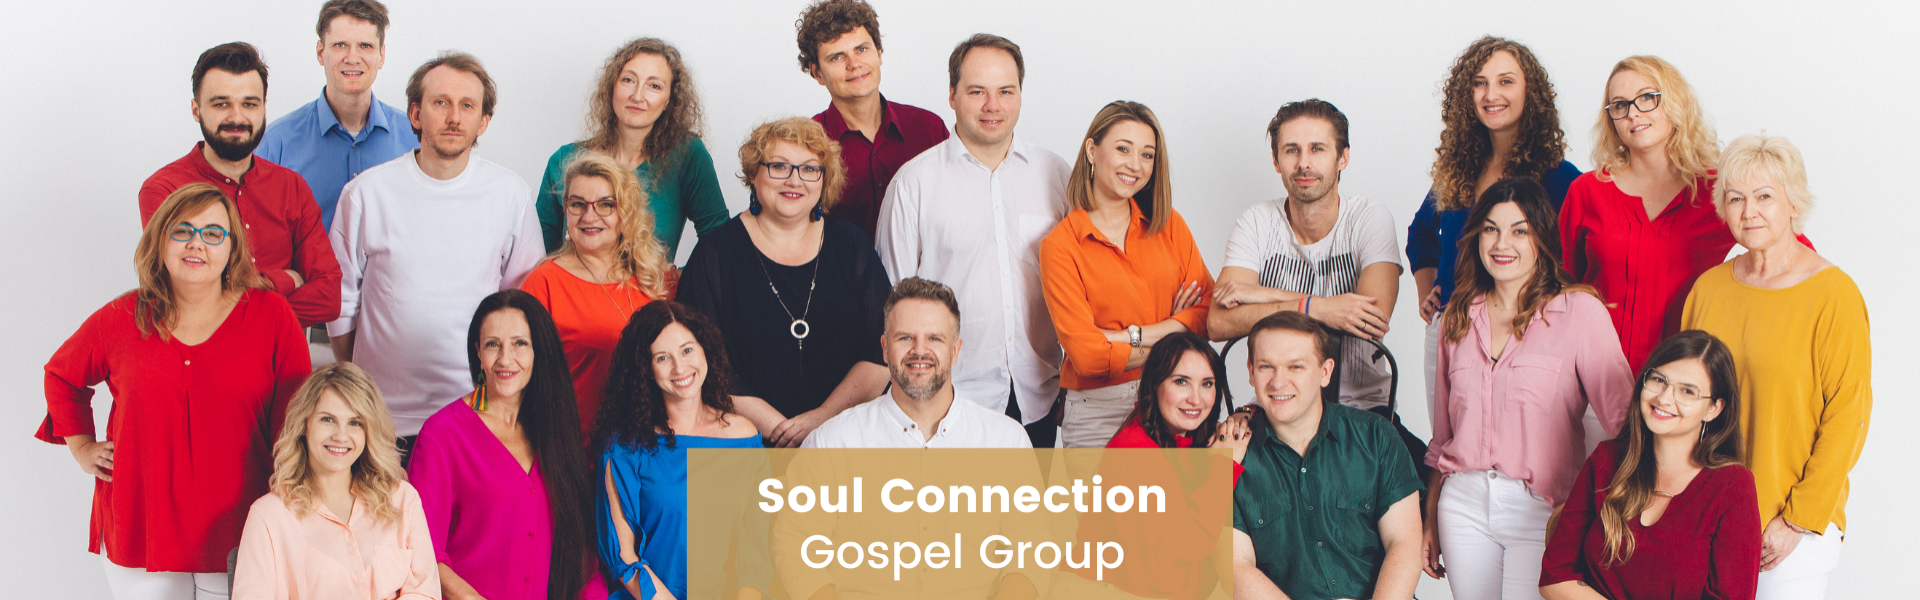 Soul Connection Gospel Group